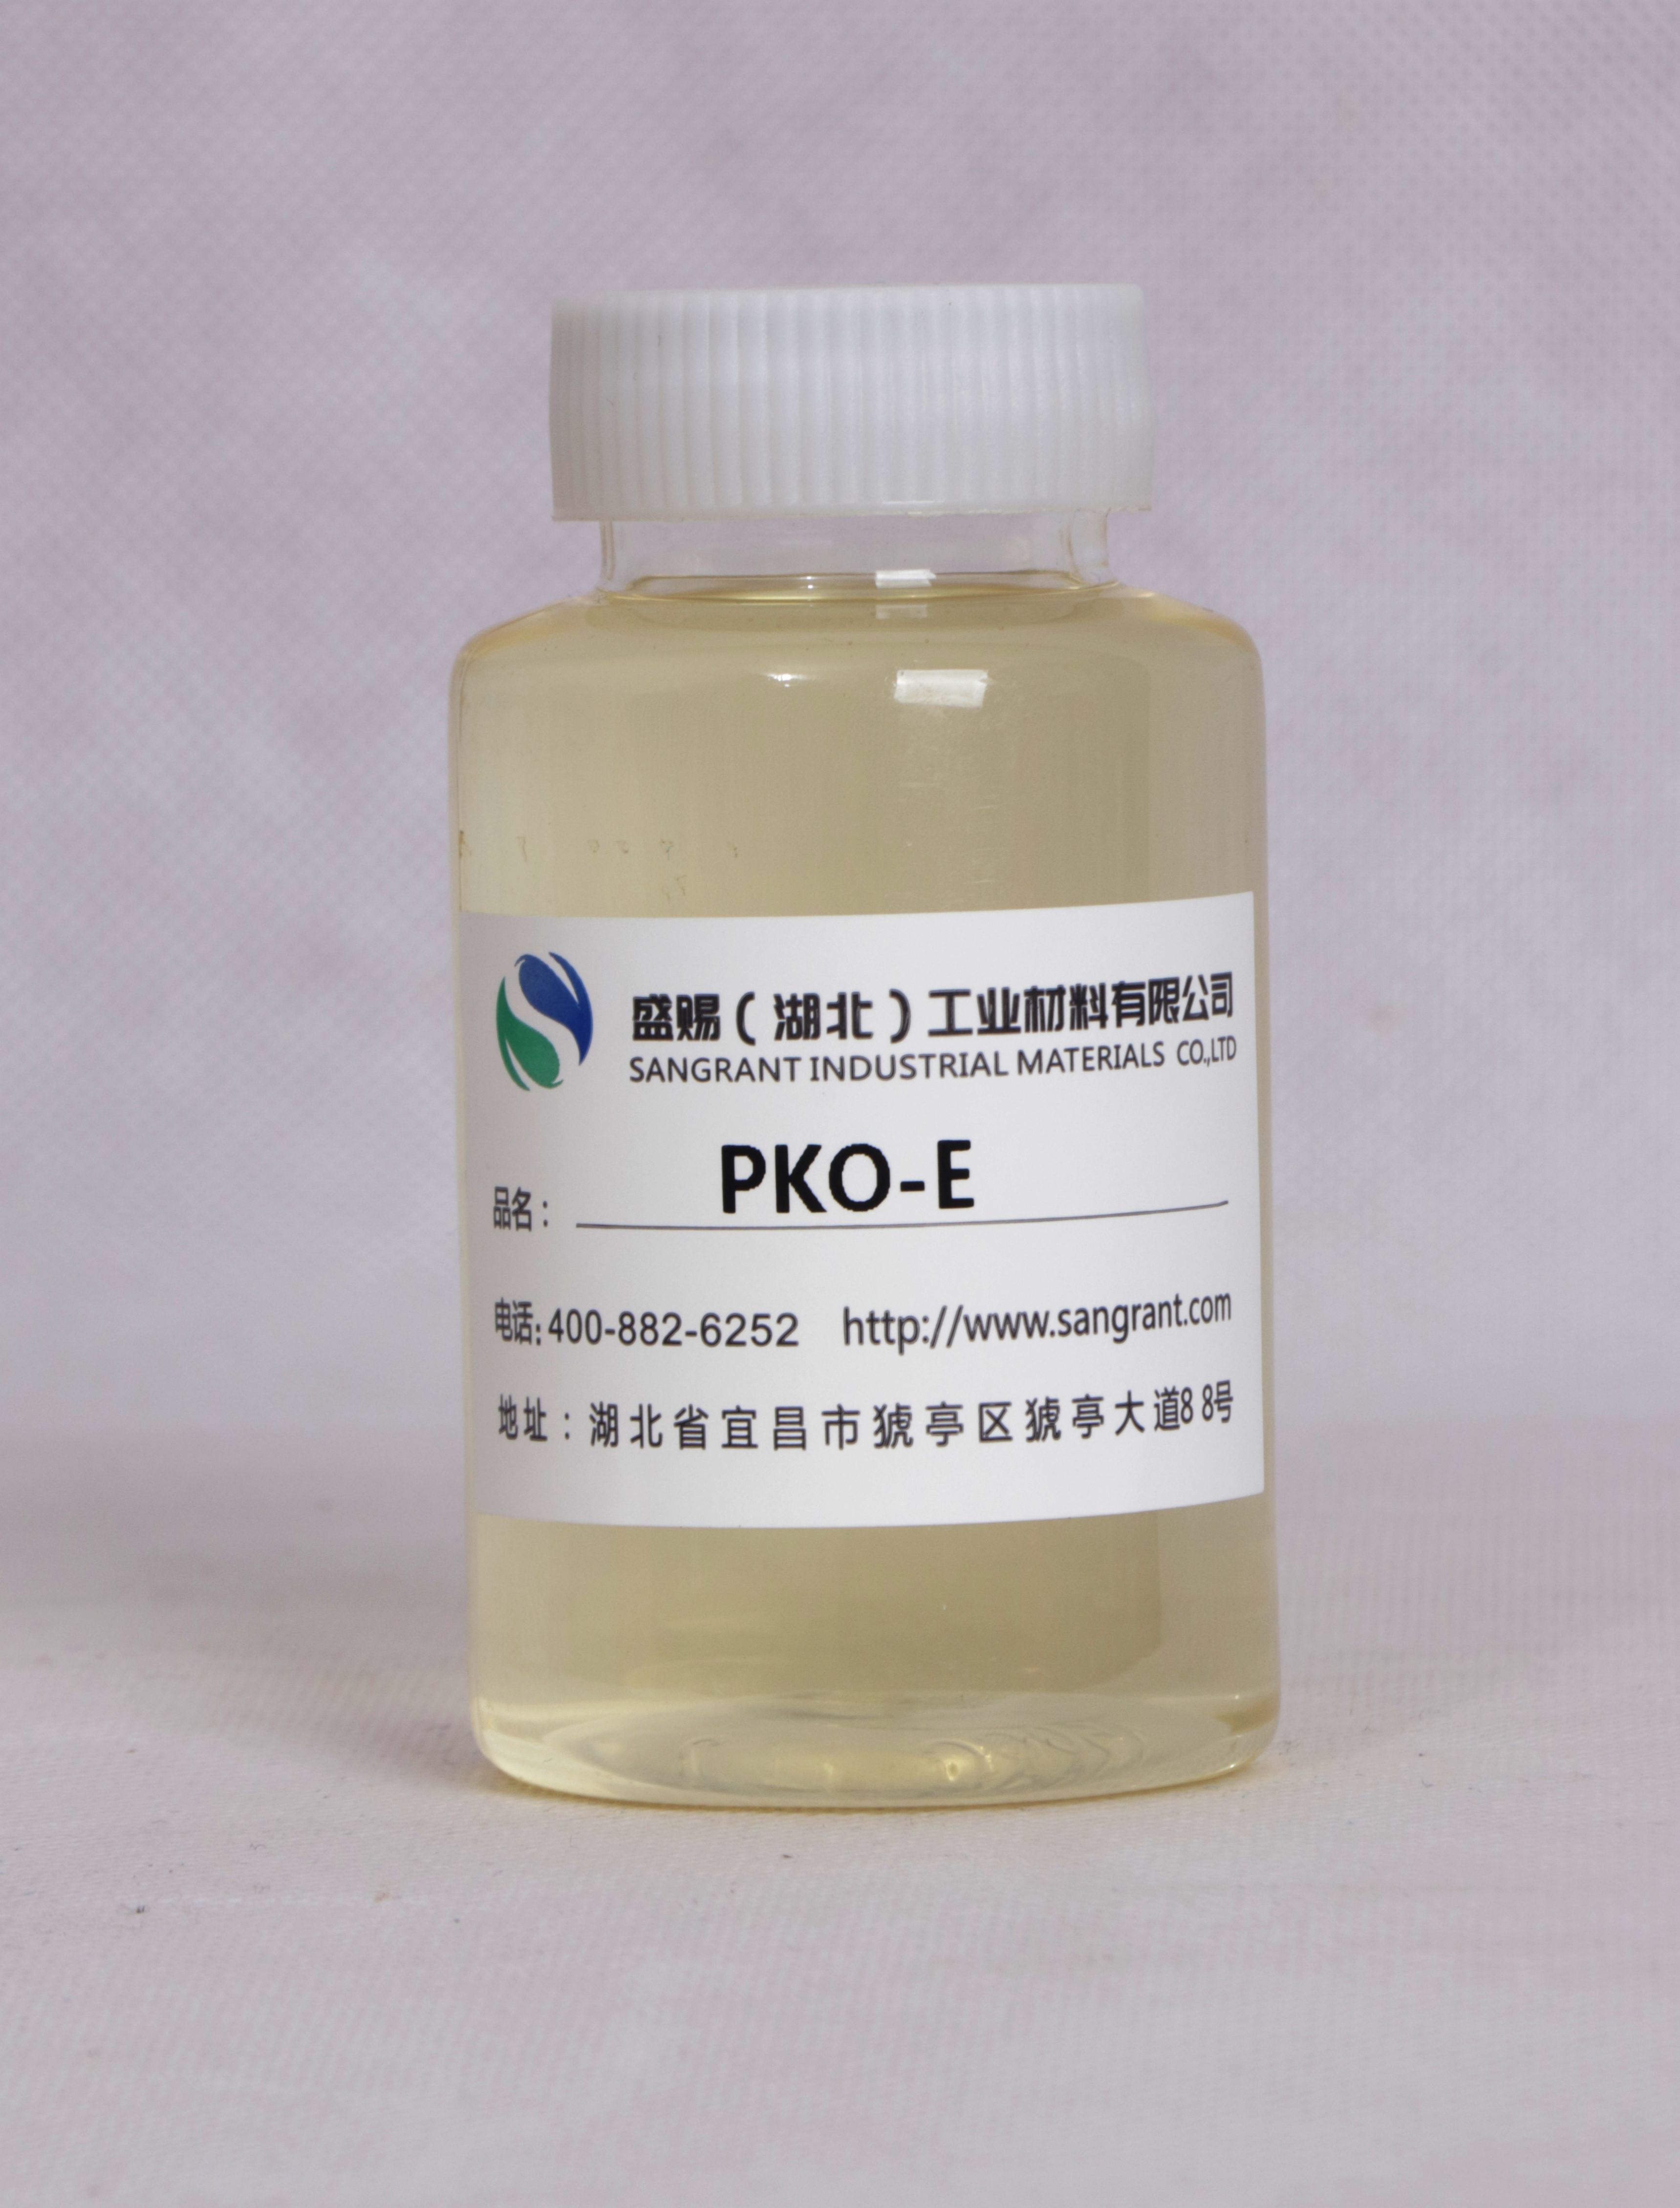 盛赐 芥酸酰胺丙基二甲胺PKO-E 农乳化剂 发泡剂 沥青乳化剂 质量稳定